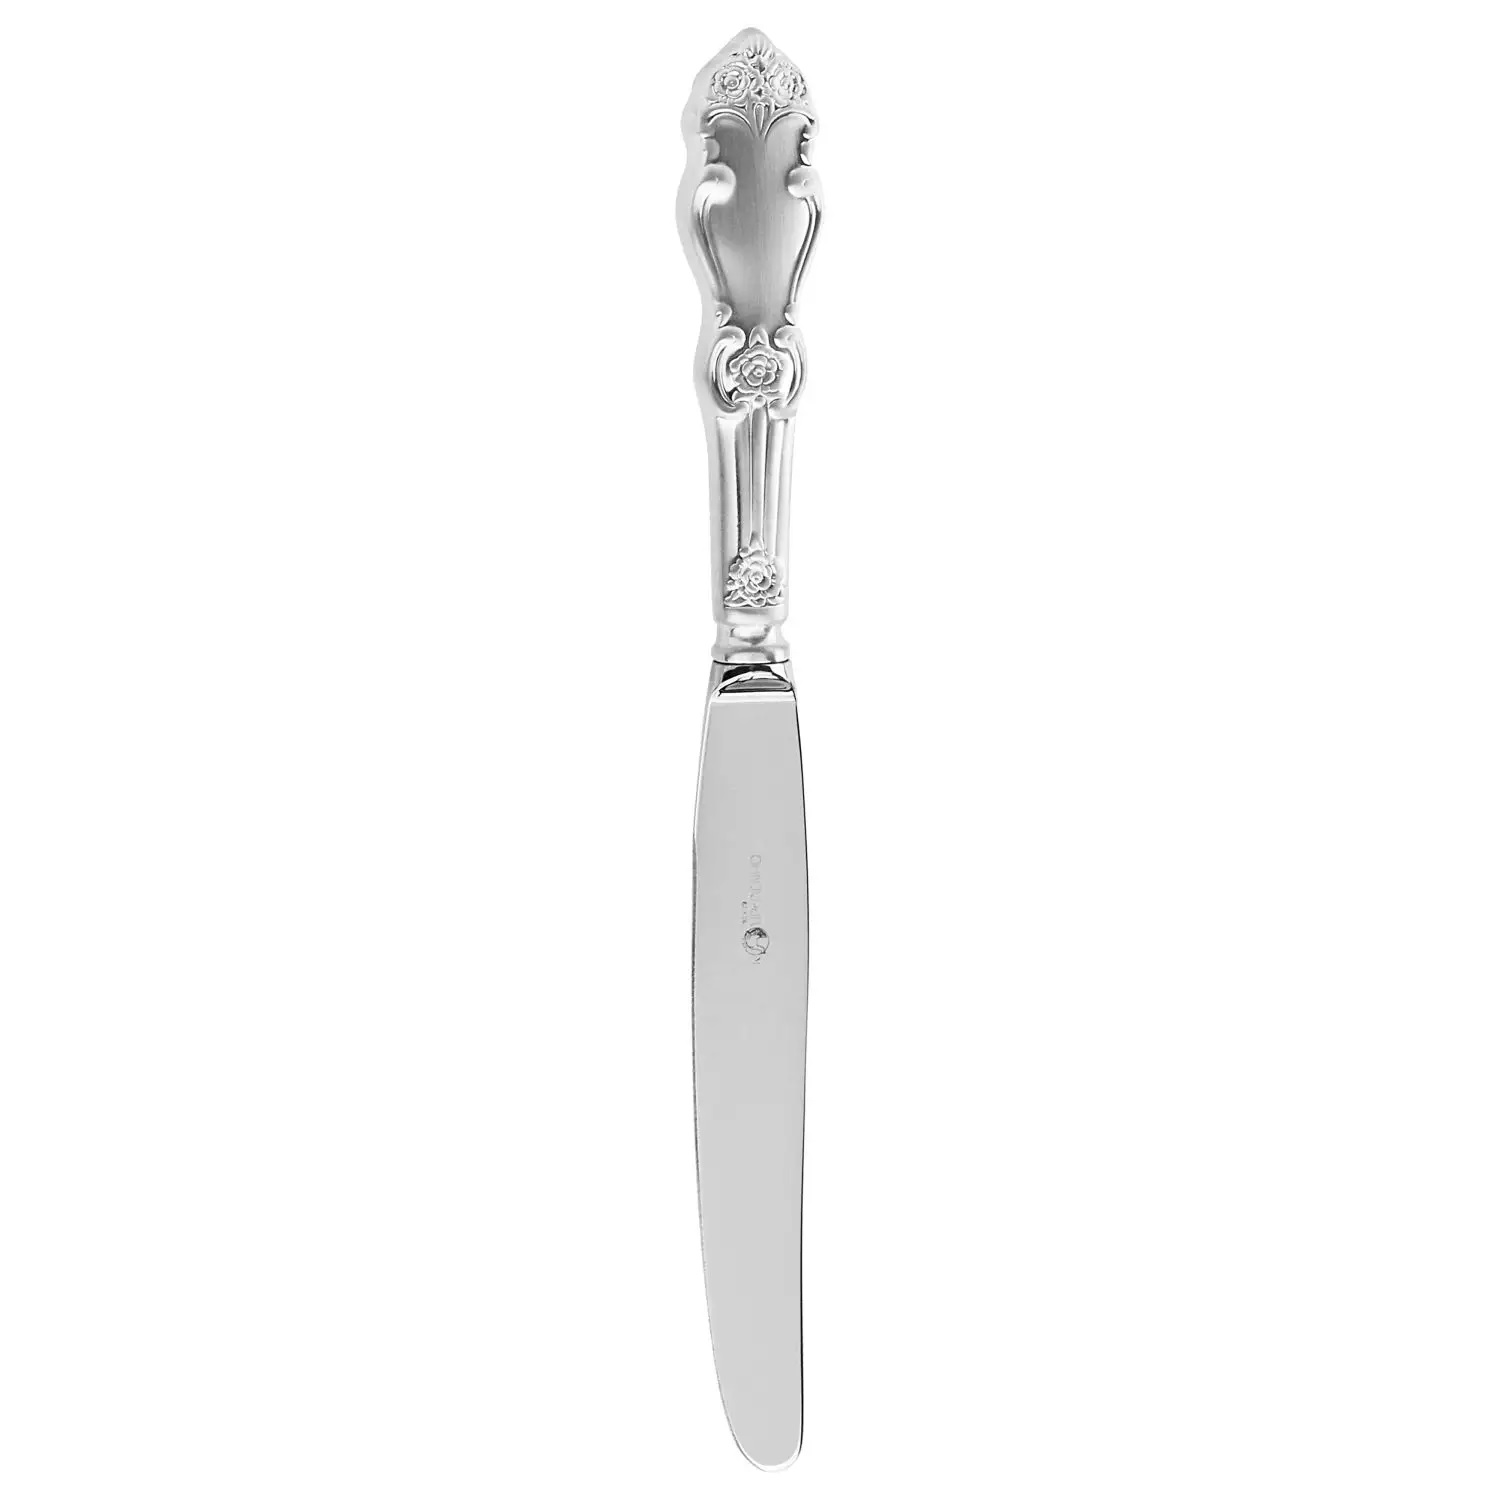 Посеребренный столовый нож Серебряная роза матированныйФото 25717-01.jpg